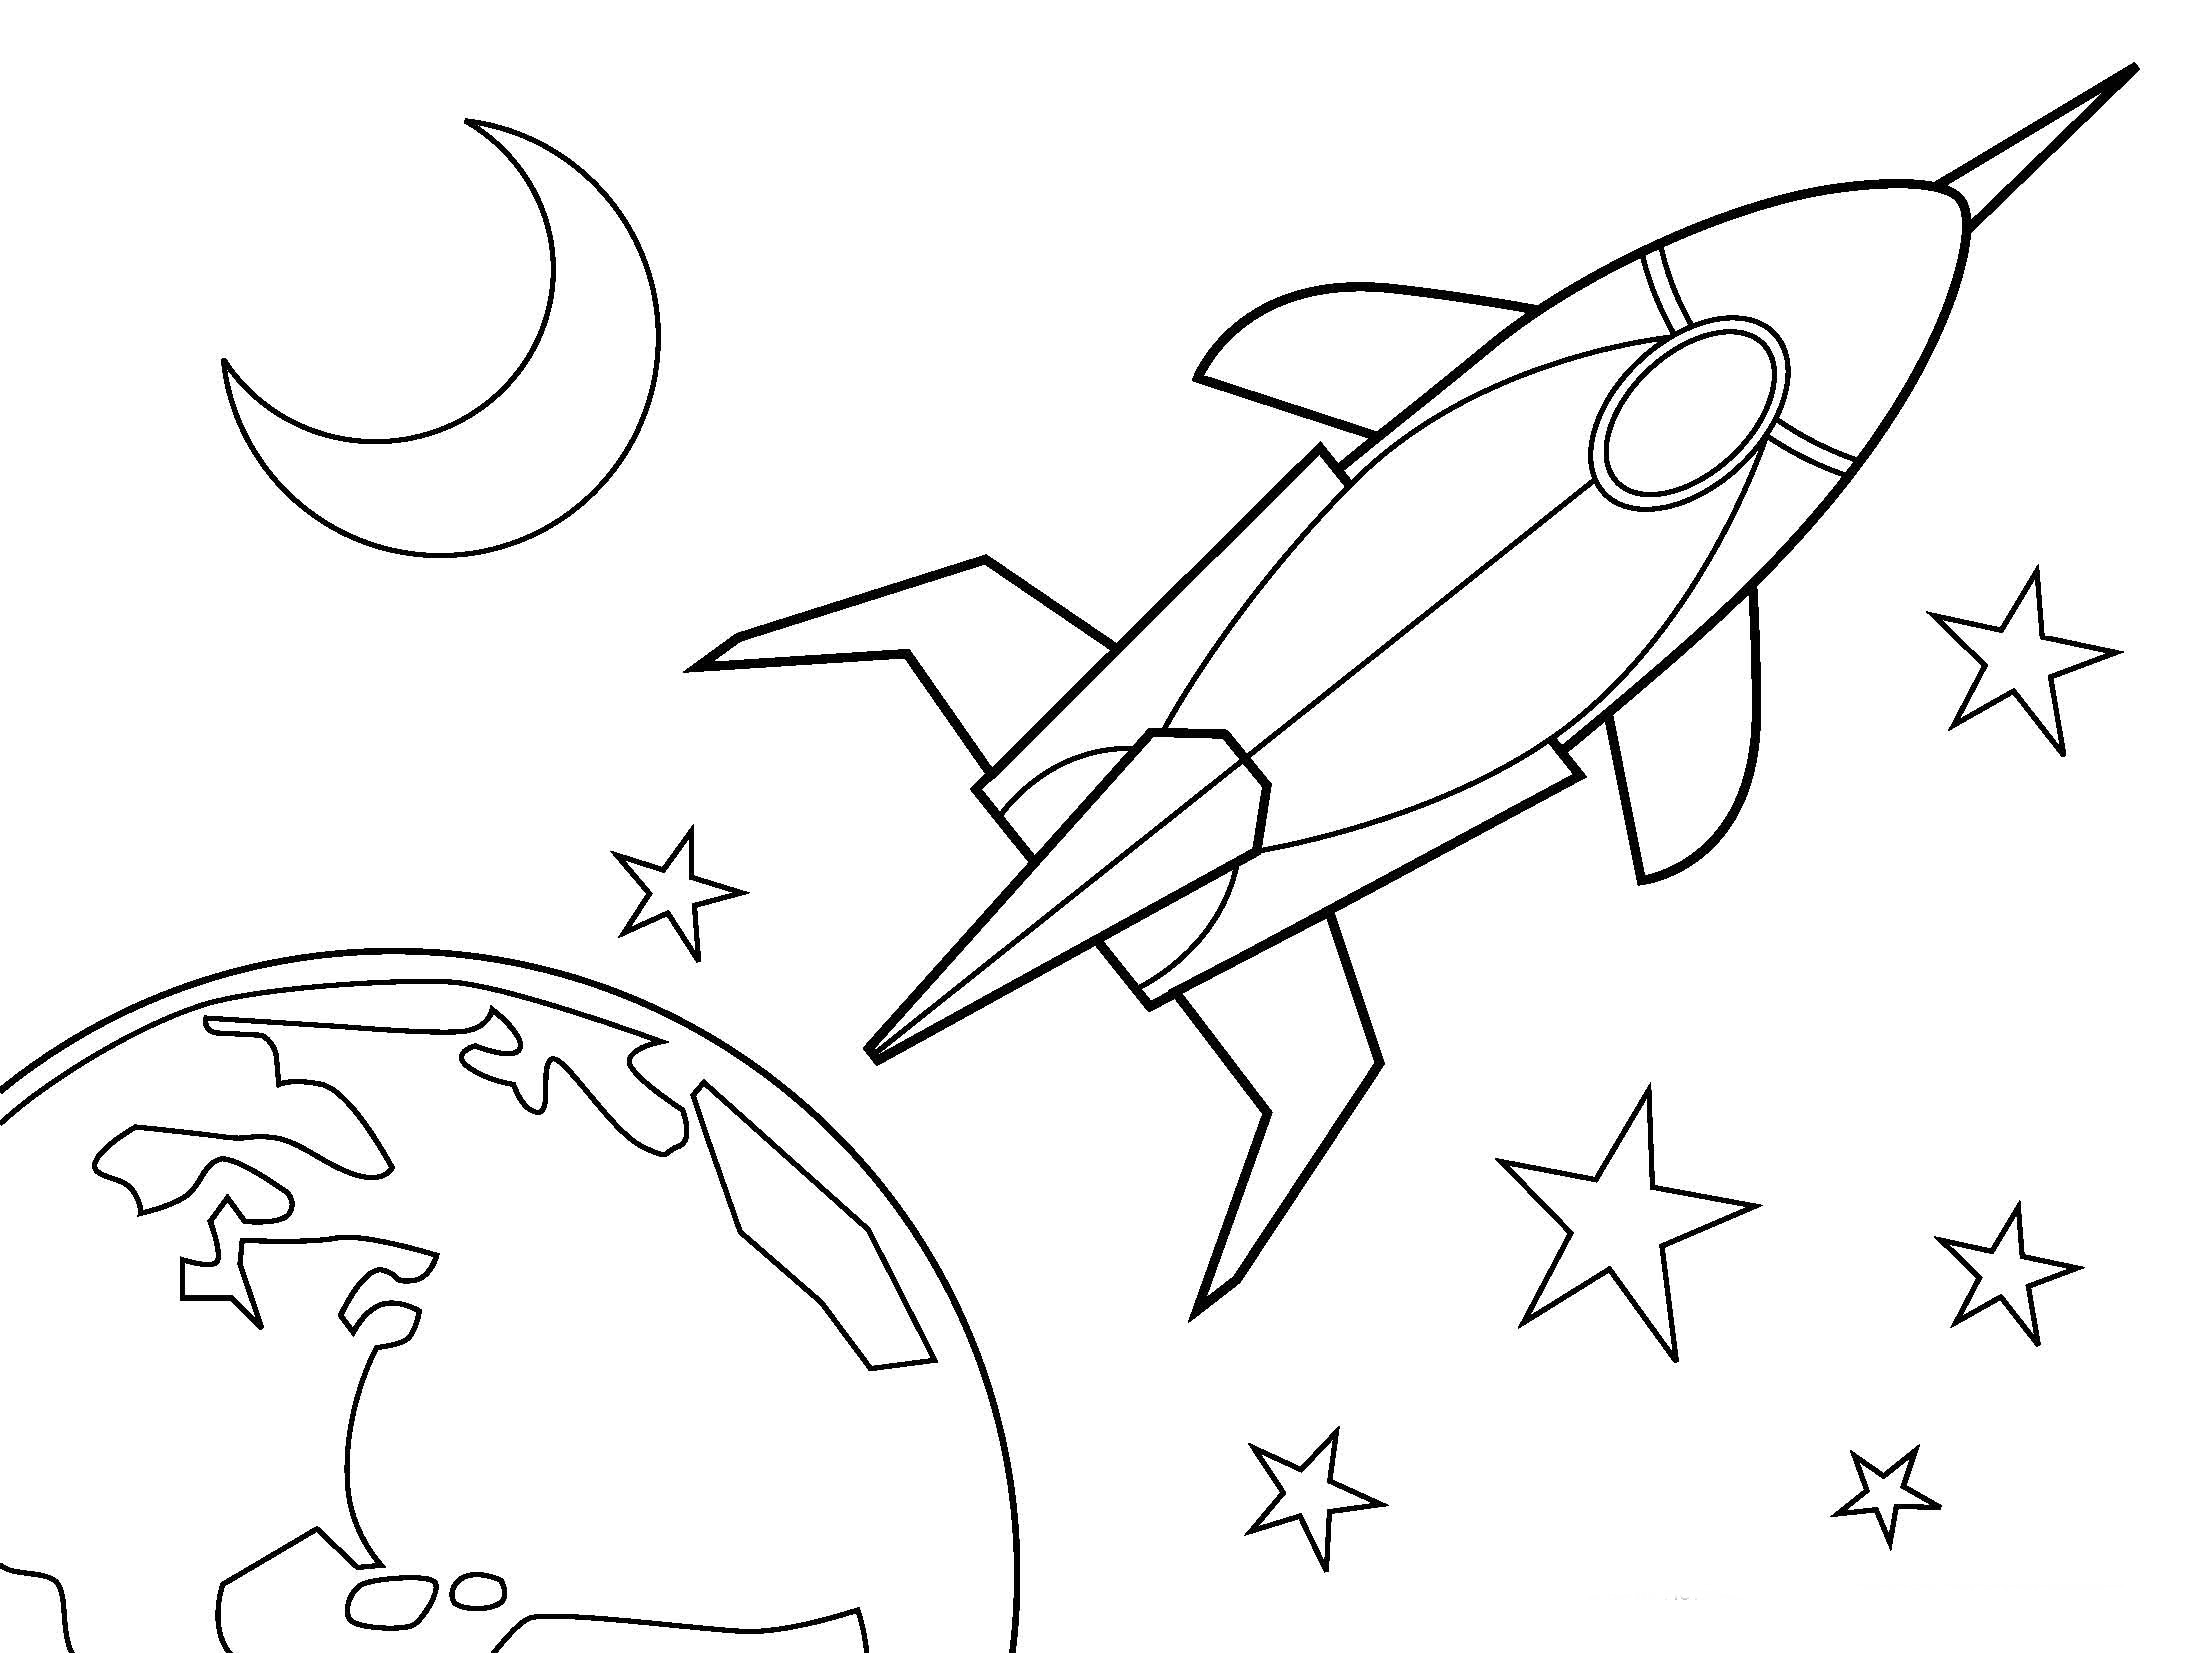 Рисунок на день космонавтики раскраска. Космос раскраска для детей. Раскраска. В космосе. Раскраска для малышей. Космос. Детские раскраски космос.